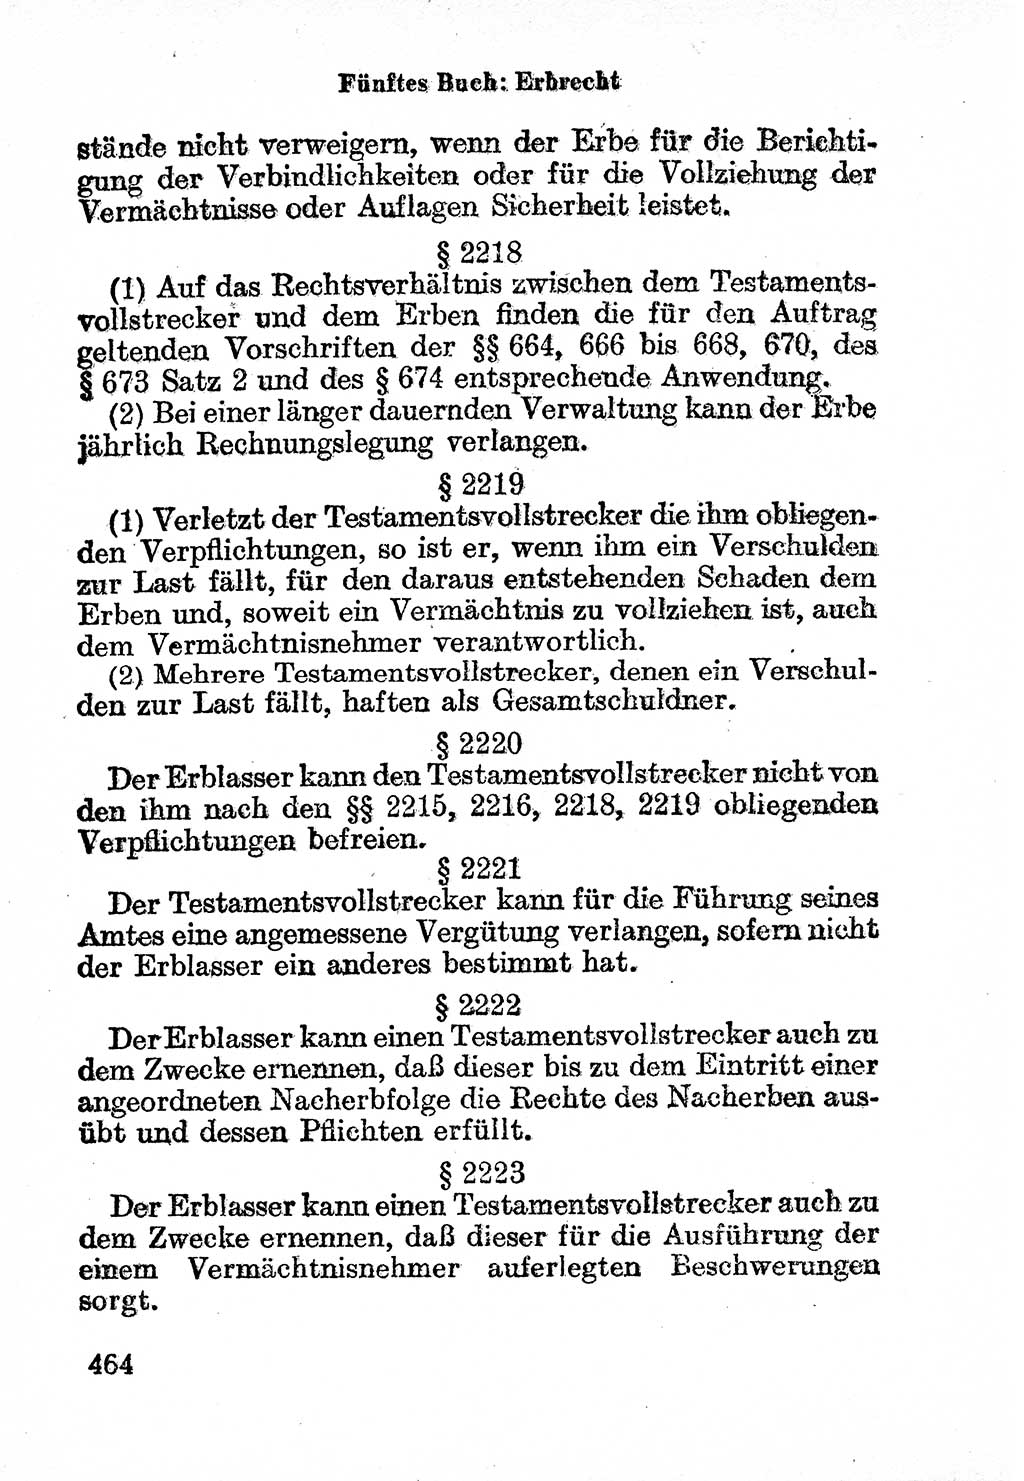 Bürgerliches Gesetzbuch (BGB) nebst wichtigen Nebengesetzen [Deutsche Demokratische Republik (DDR)] 1956, Seite 464 (BGB Nebenges. DDR 1956, S. 464)